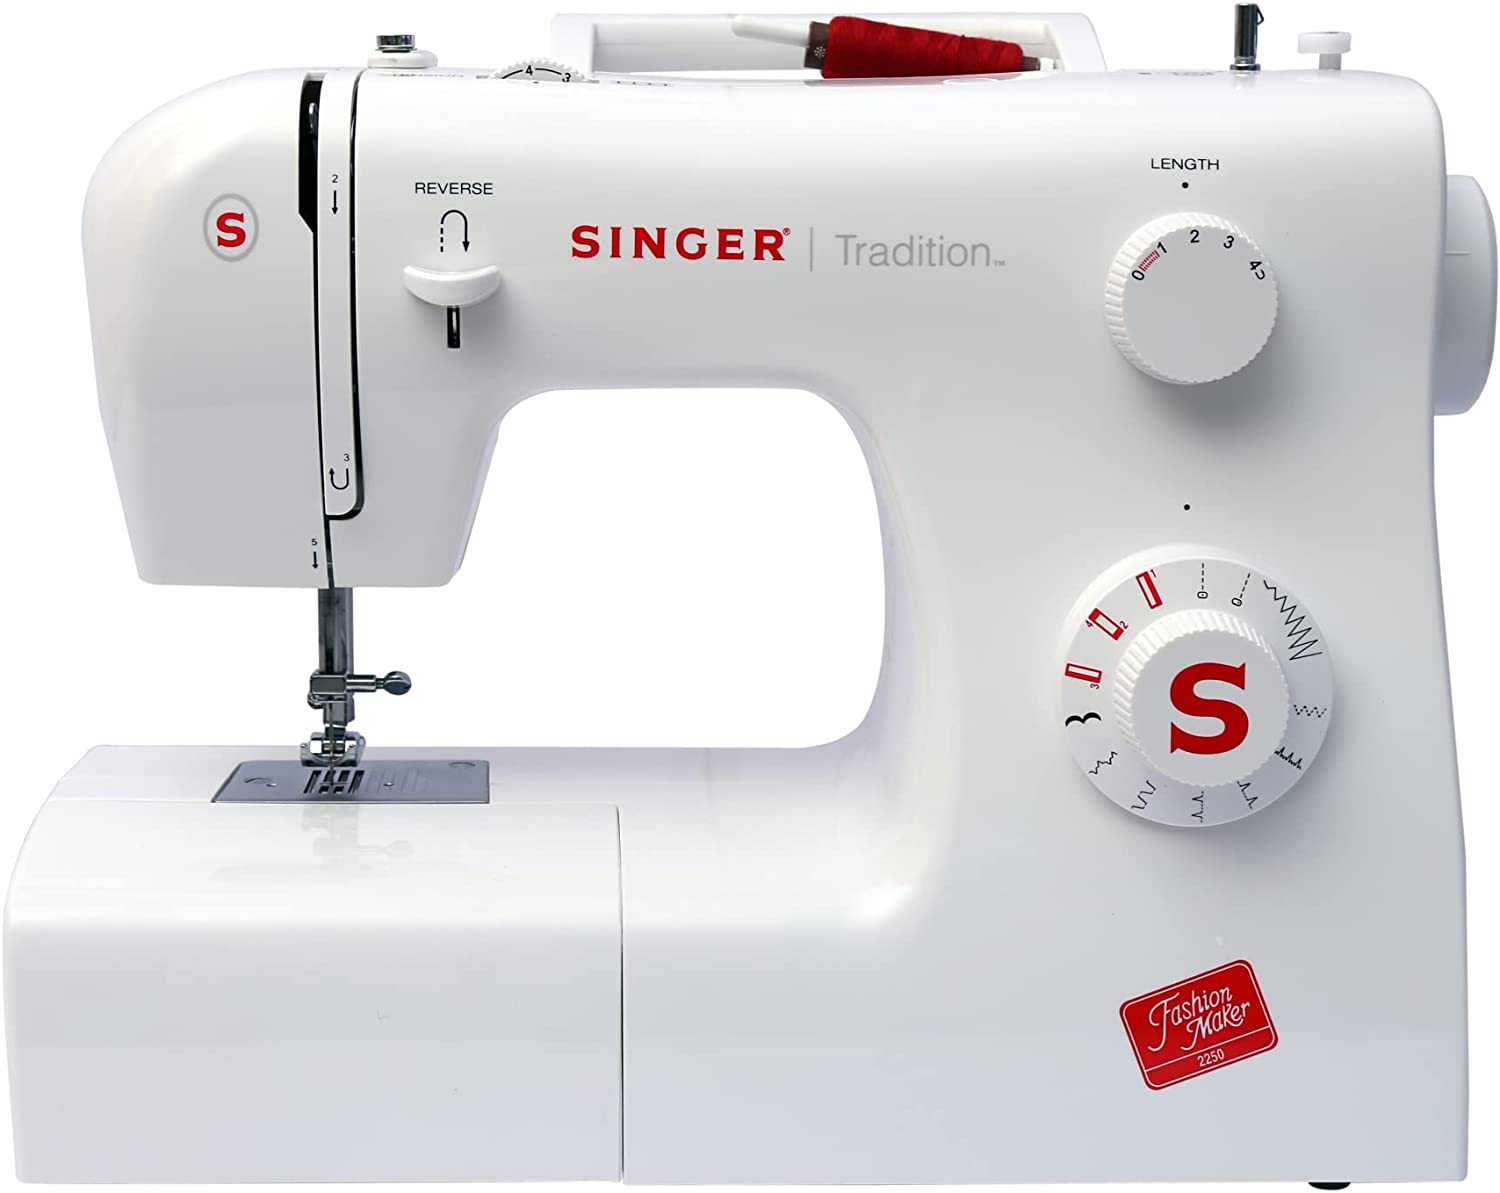 Mesas para máquinas de coser: Guía de compra - EScreatextil